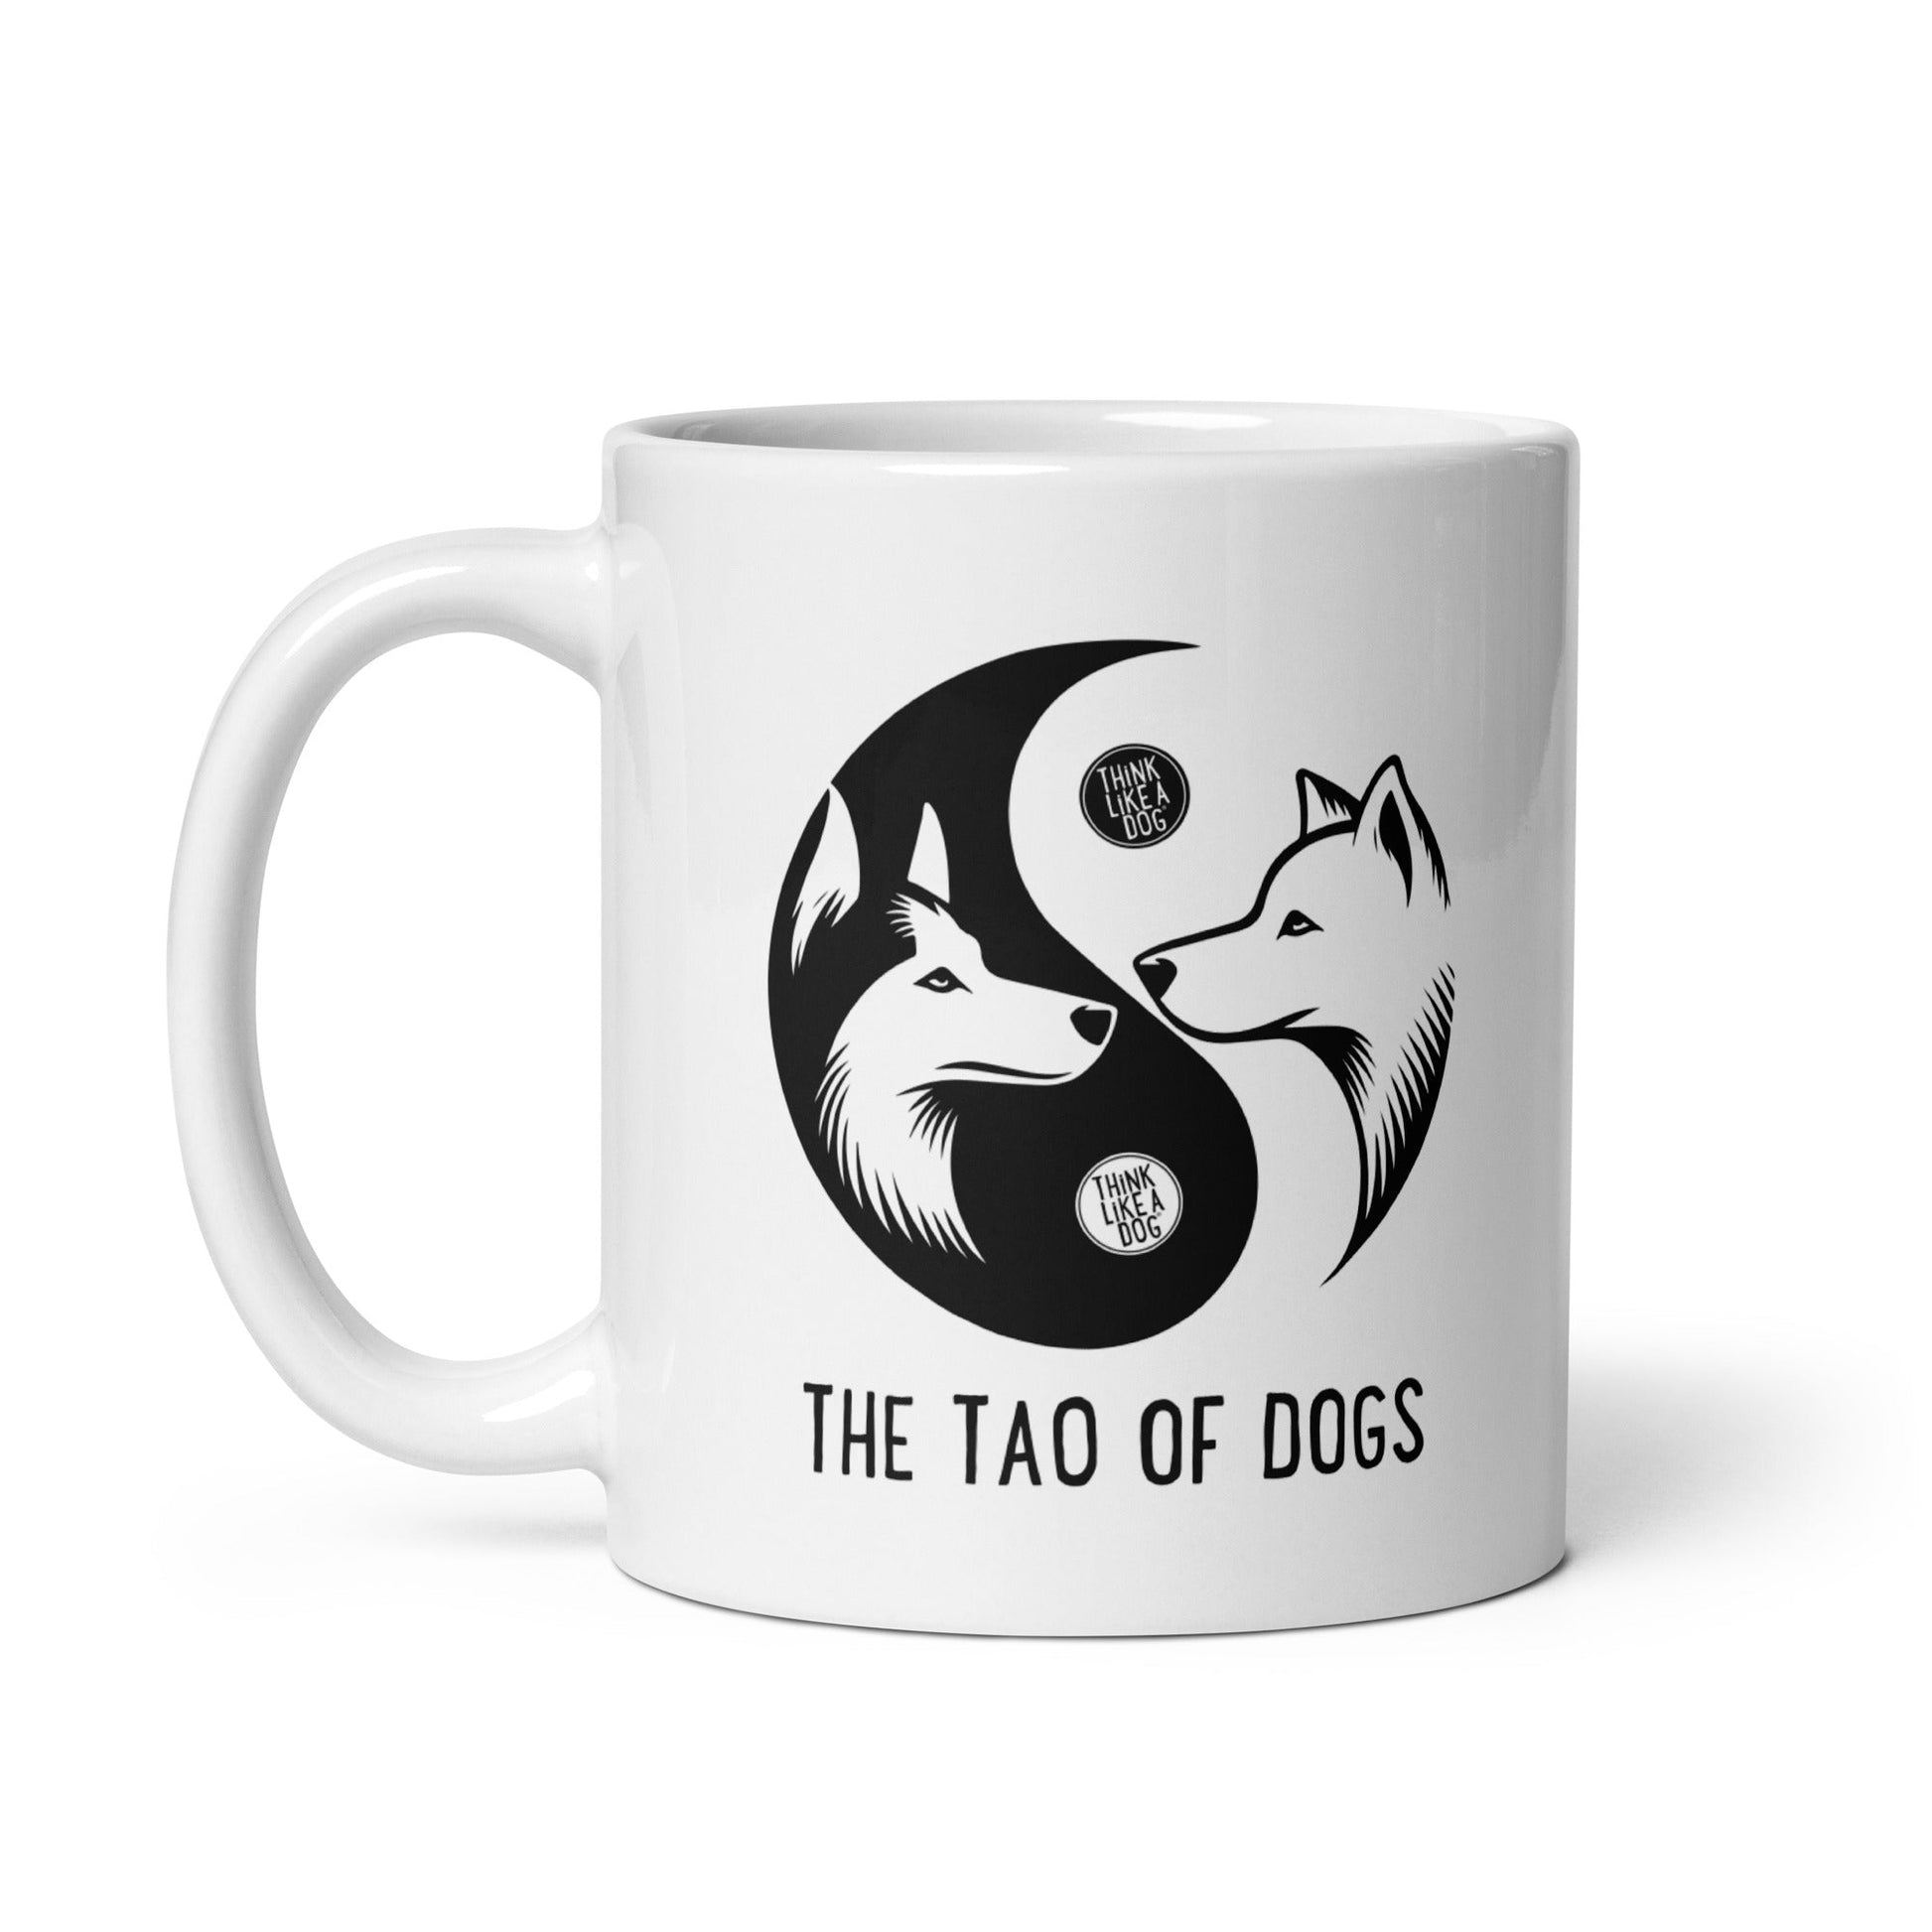 White glossy Mug The Tao of Dogs - THiNK LiKE A DOG®